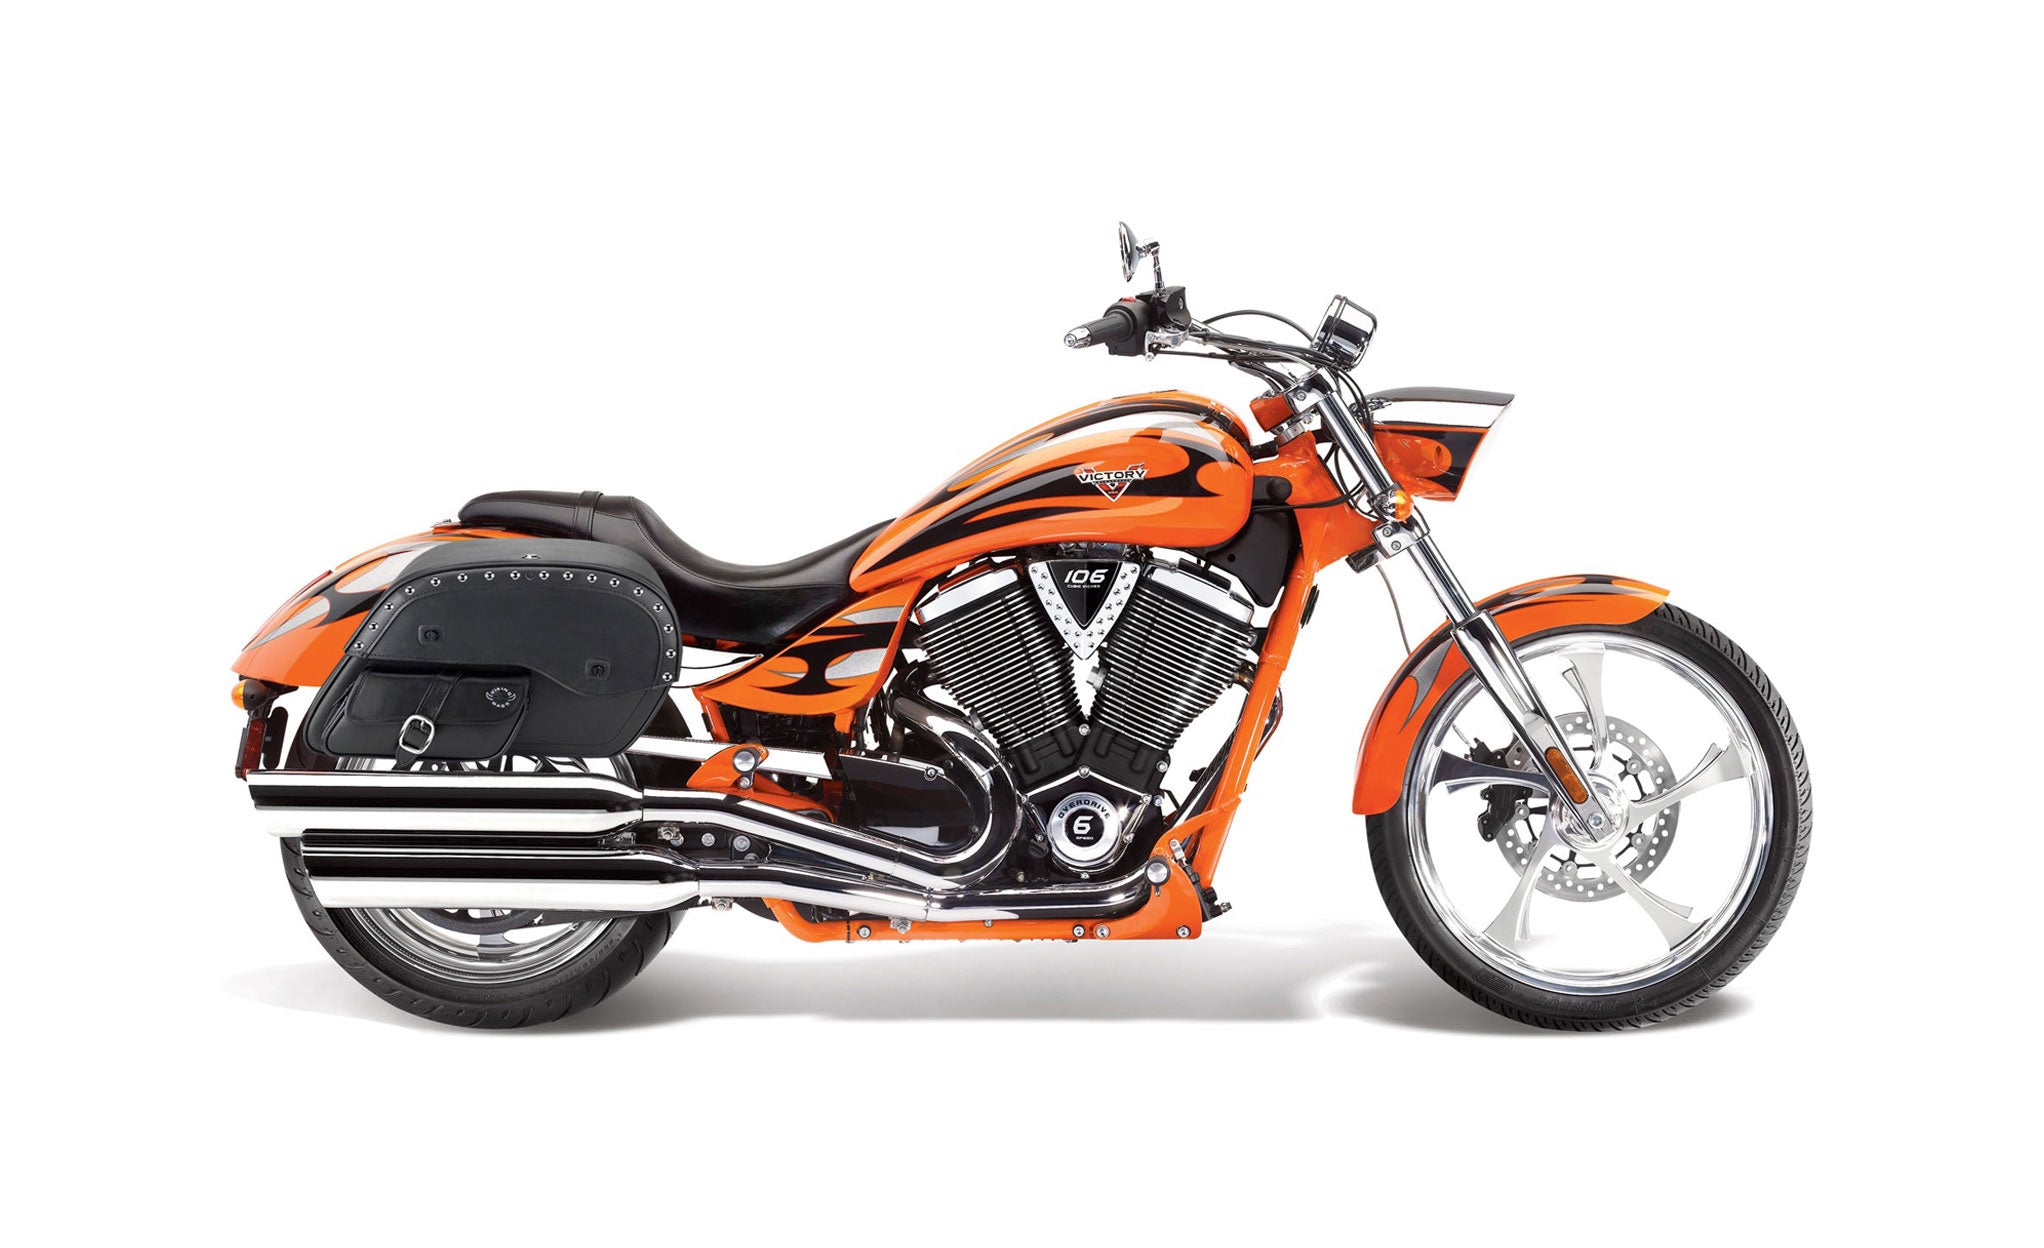 Viking Side Pocket Large Studded Victory Jackpot Leather Motorcycle Saddlebags on Bike Photo @expand